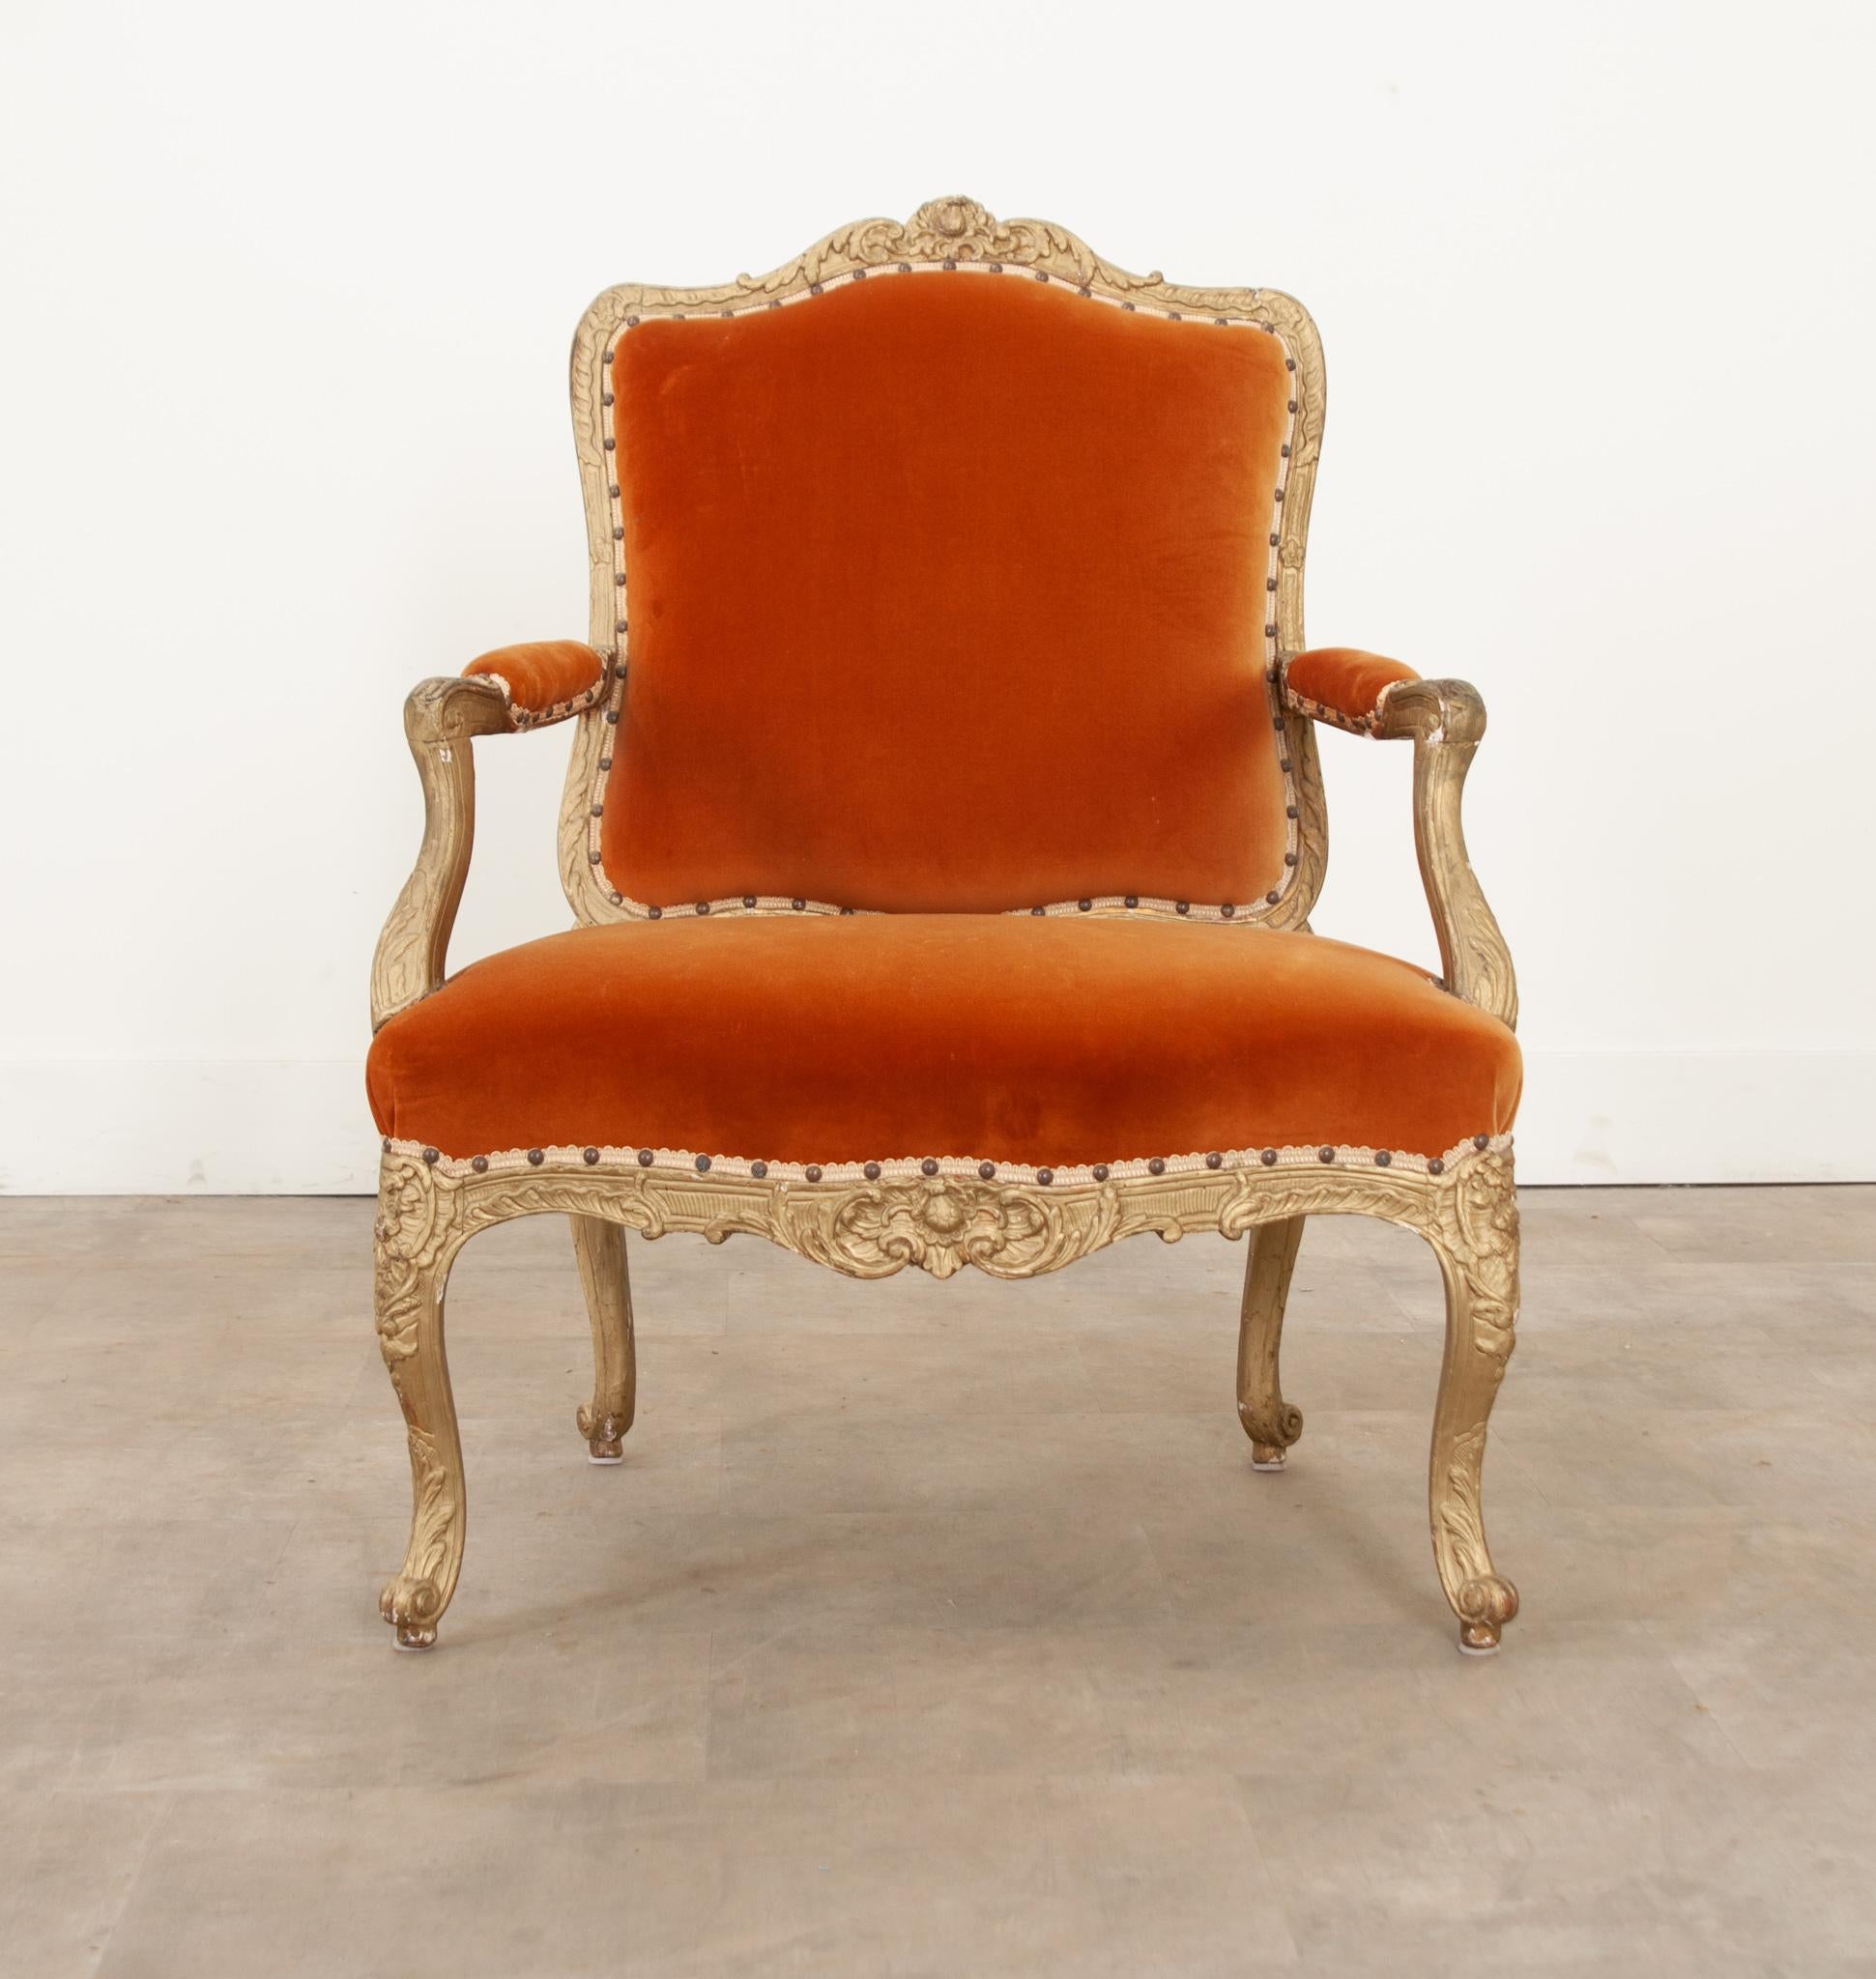 Eine fantastische und königliche Französisch Louis XV Stil gemalt fauteuil vor kurzem gepolstert. Die bemalten Goldrahmen wurden mit exquisiter Handwerkskunst geschnitzt und weisen komplizierte Kreuzschraffuren, Blumen, Rosetten, Akanthusblätter und